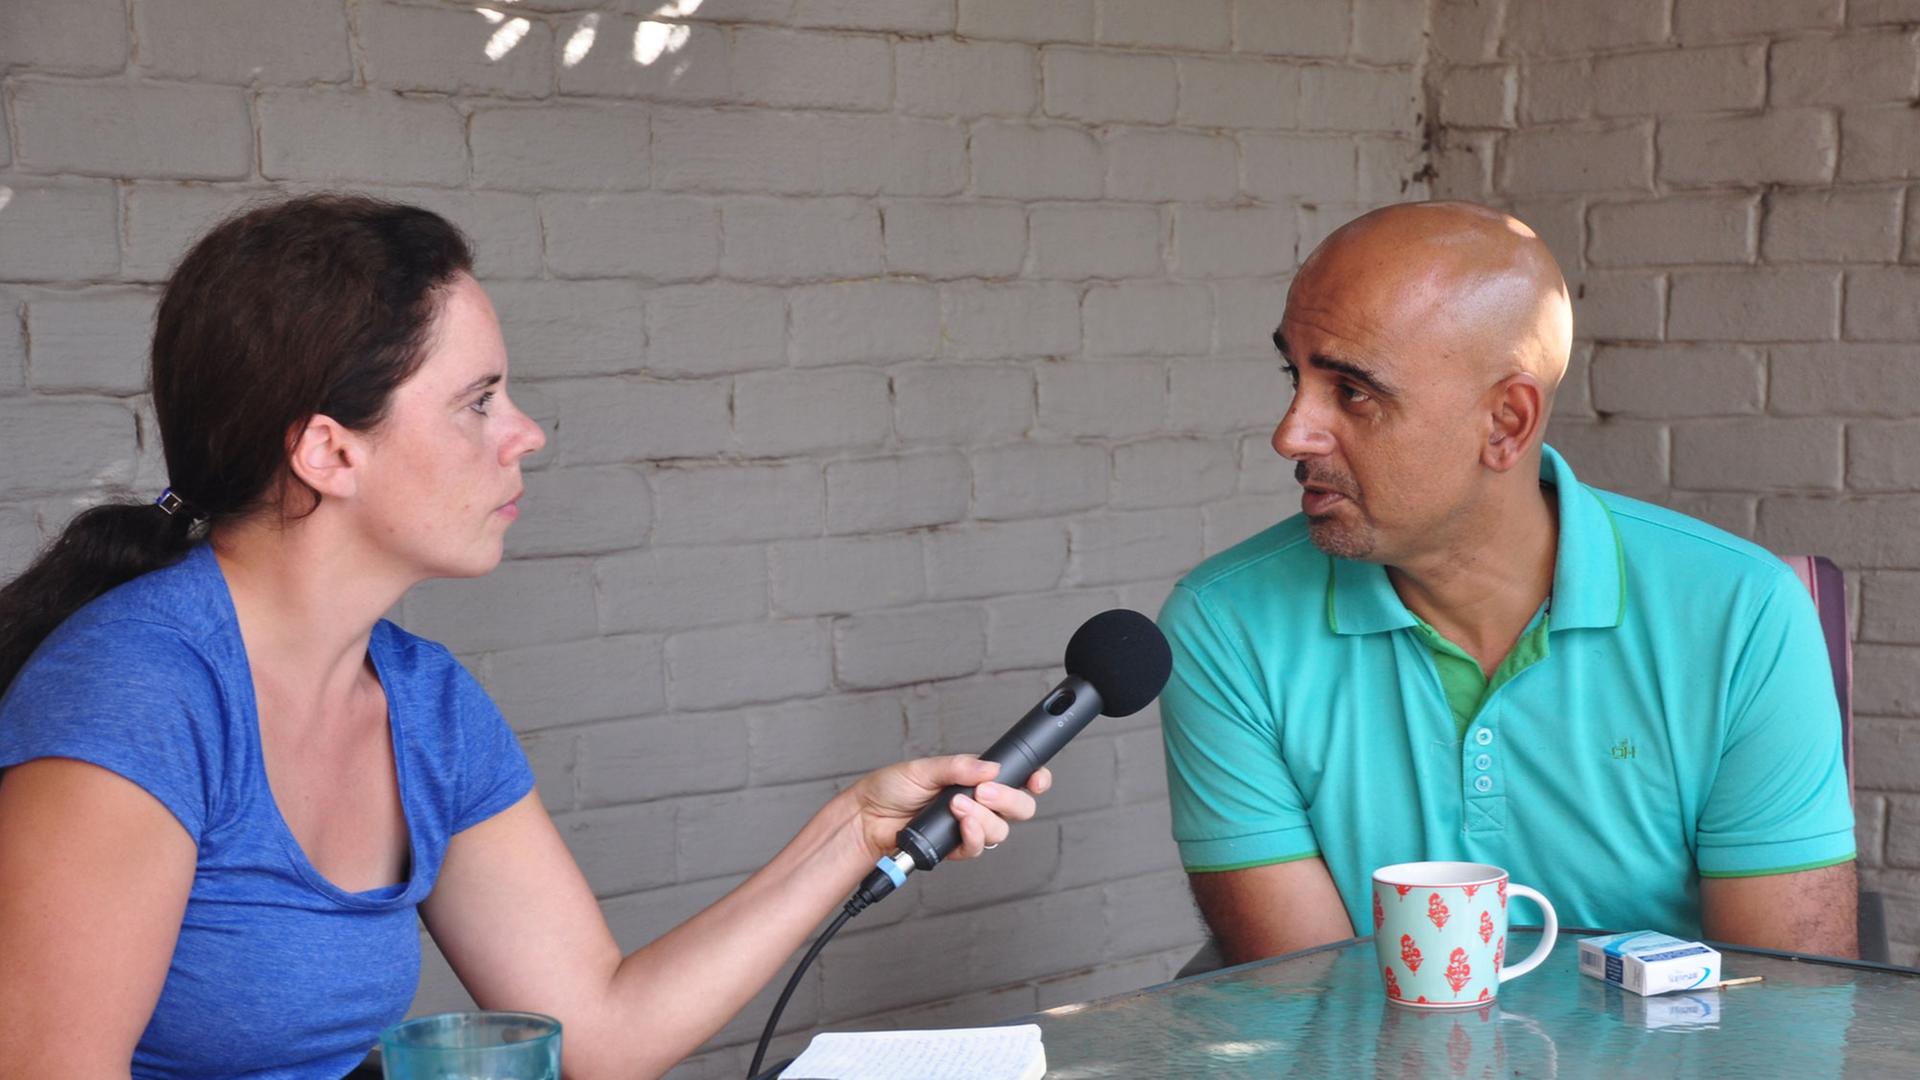 Reporterin Leonie March im Interview mit dem Dokumentarfilmer Rehad Desai.